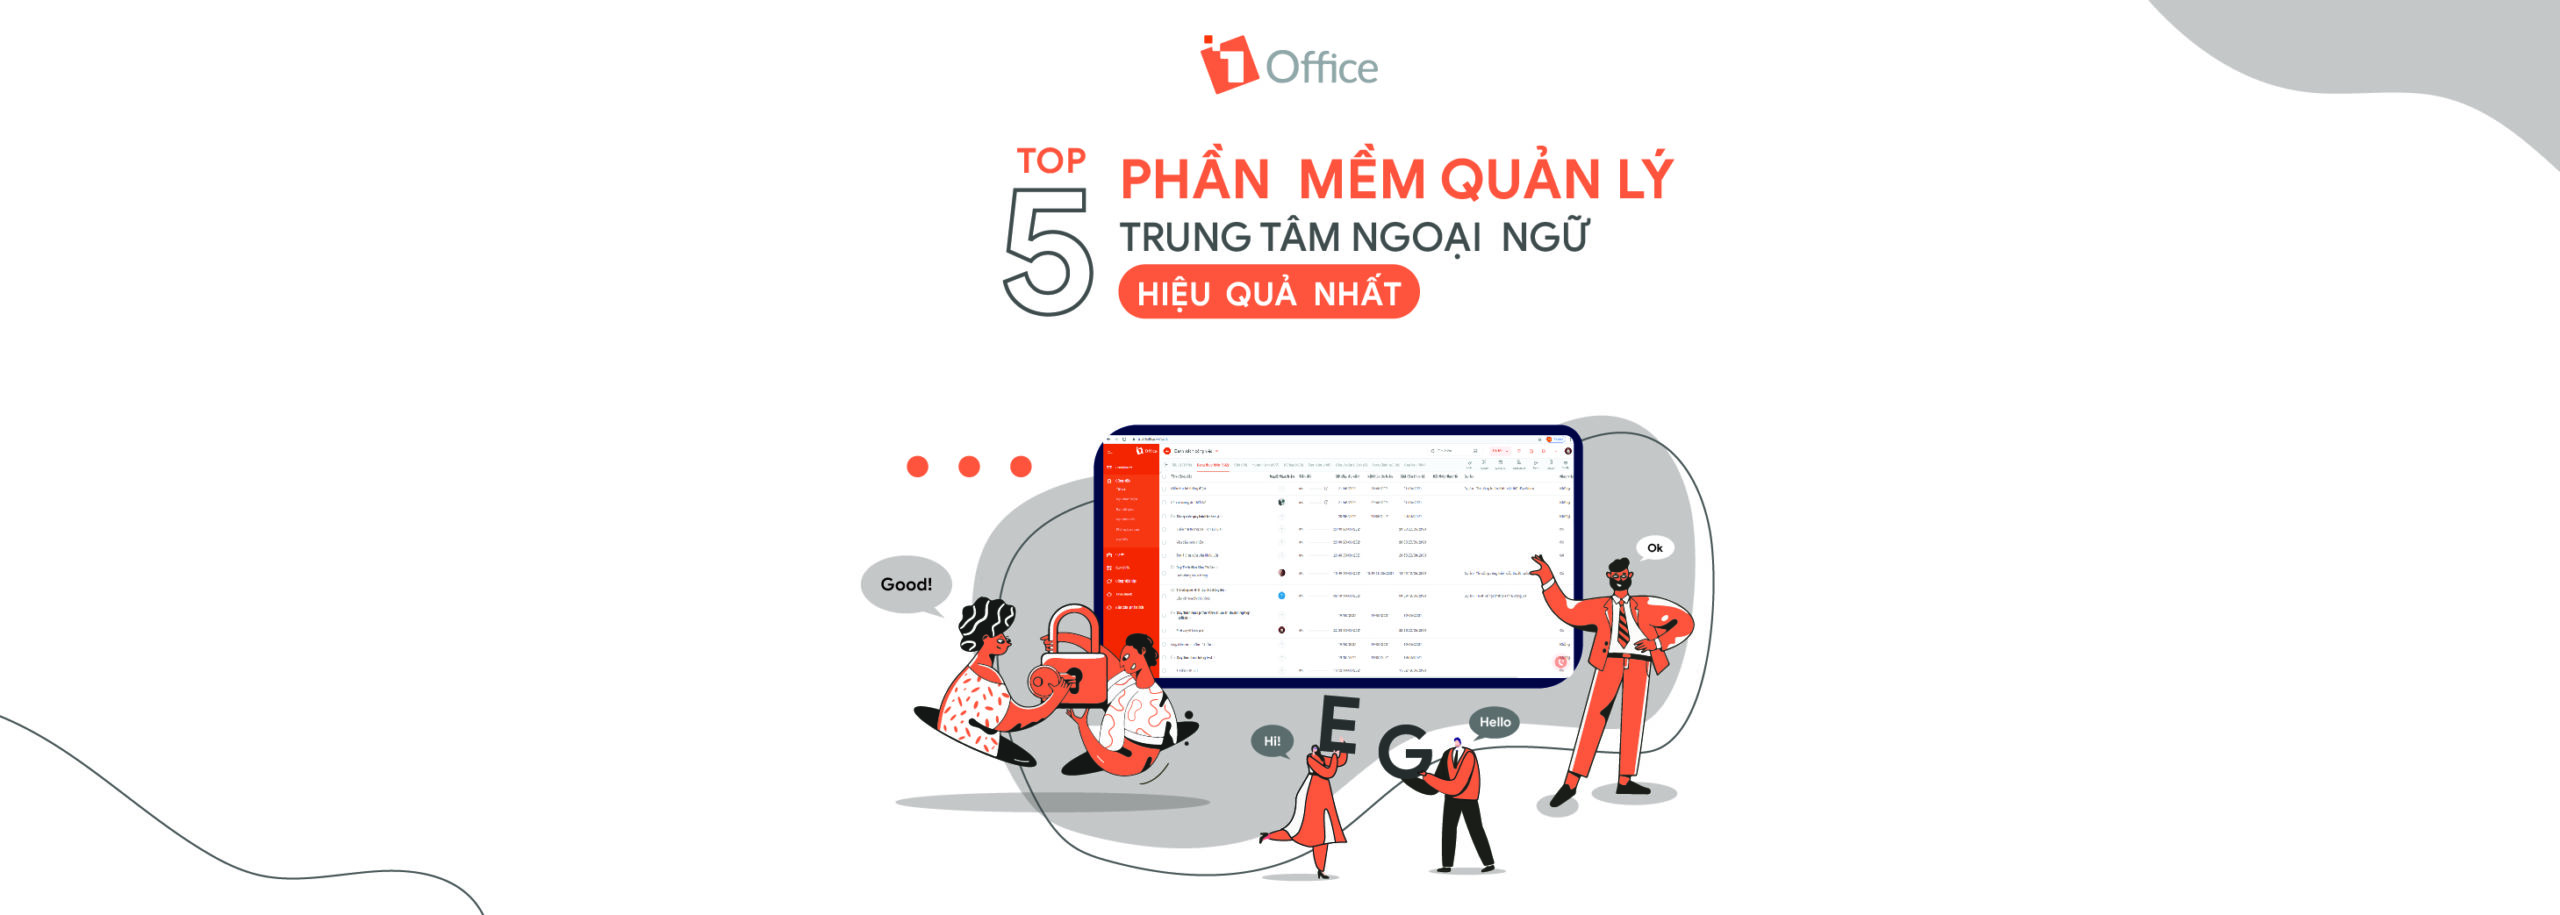 Top 5 phần mềm quản lý trung tâm ngoại ngữ hiệu quả nhất